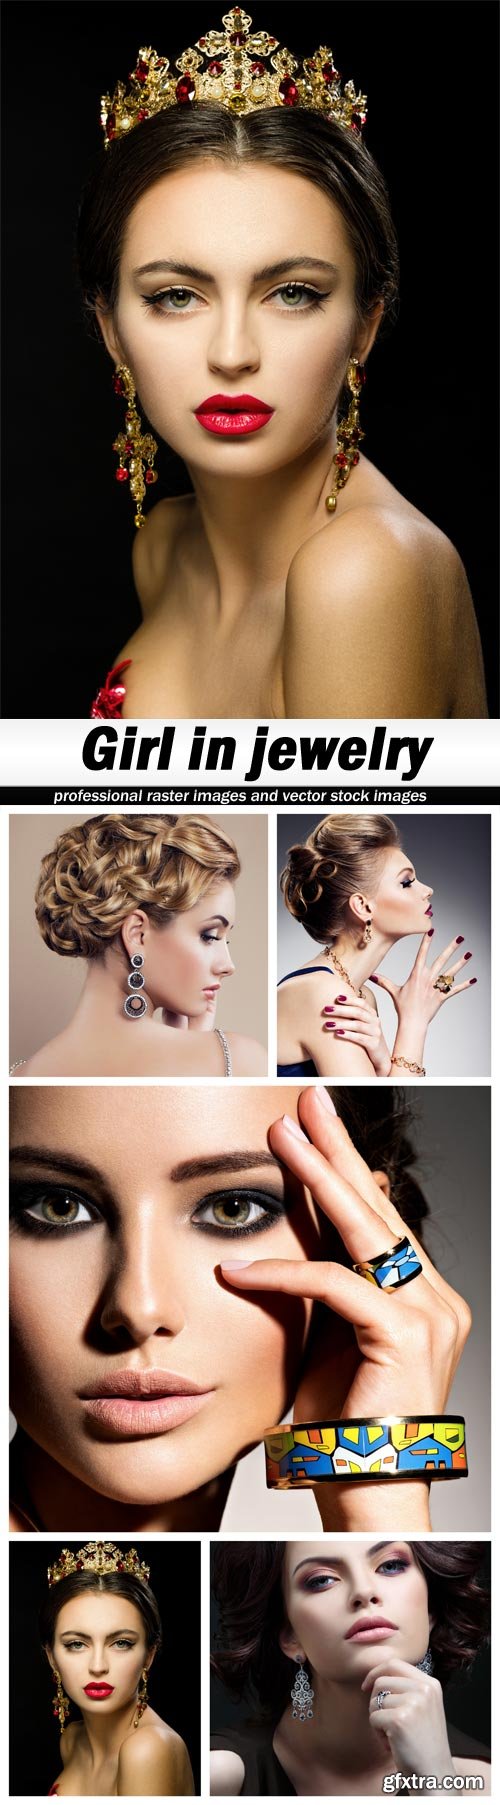 Girl in jewelry - 5 UHQ JPEG